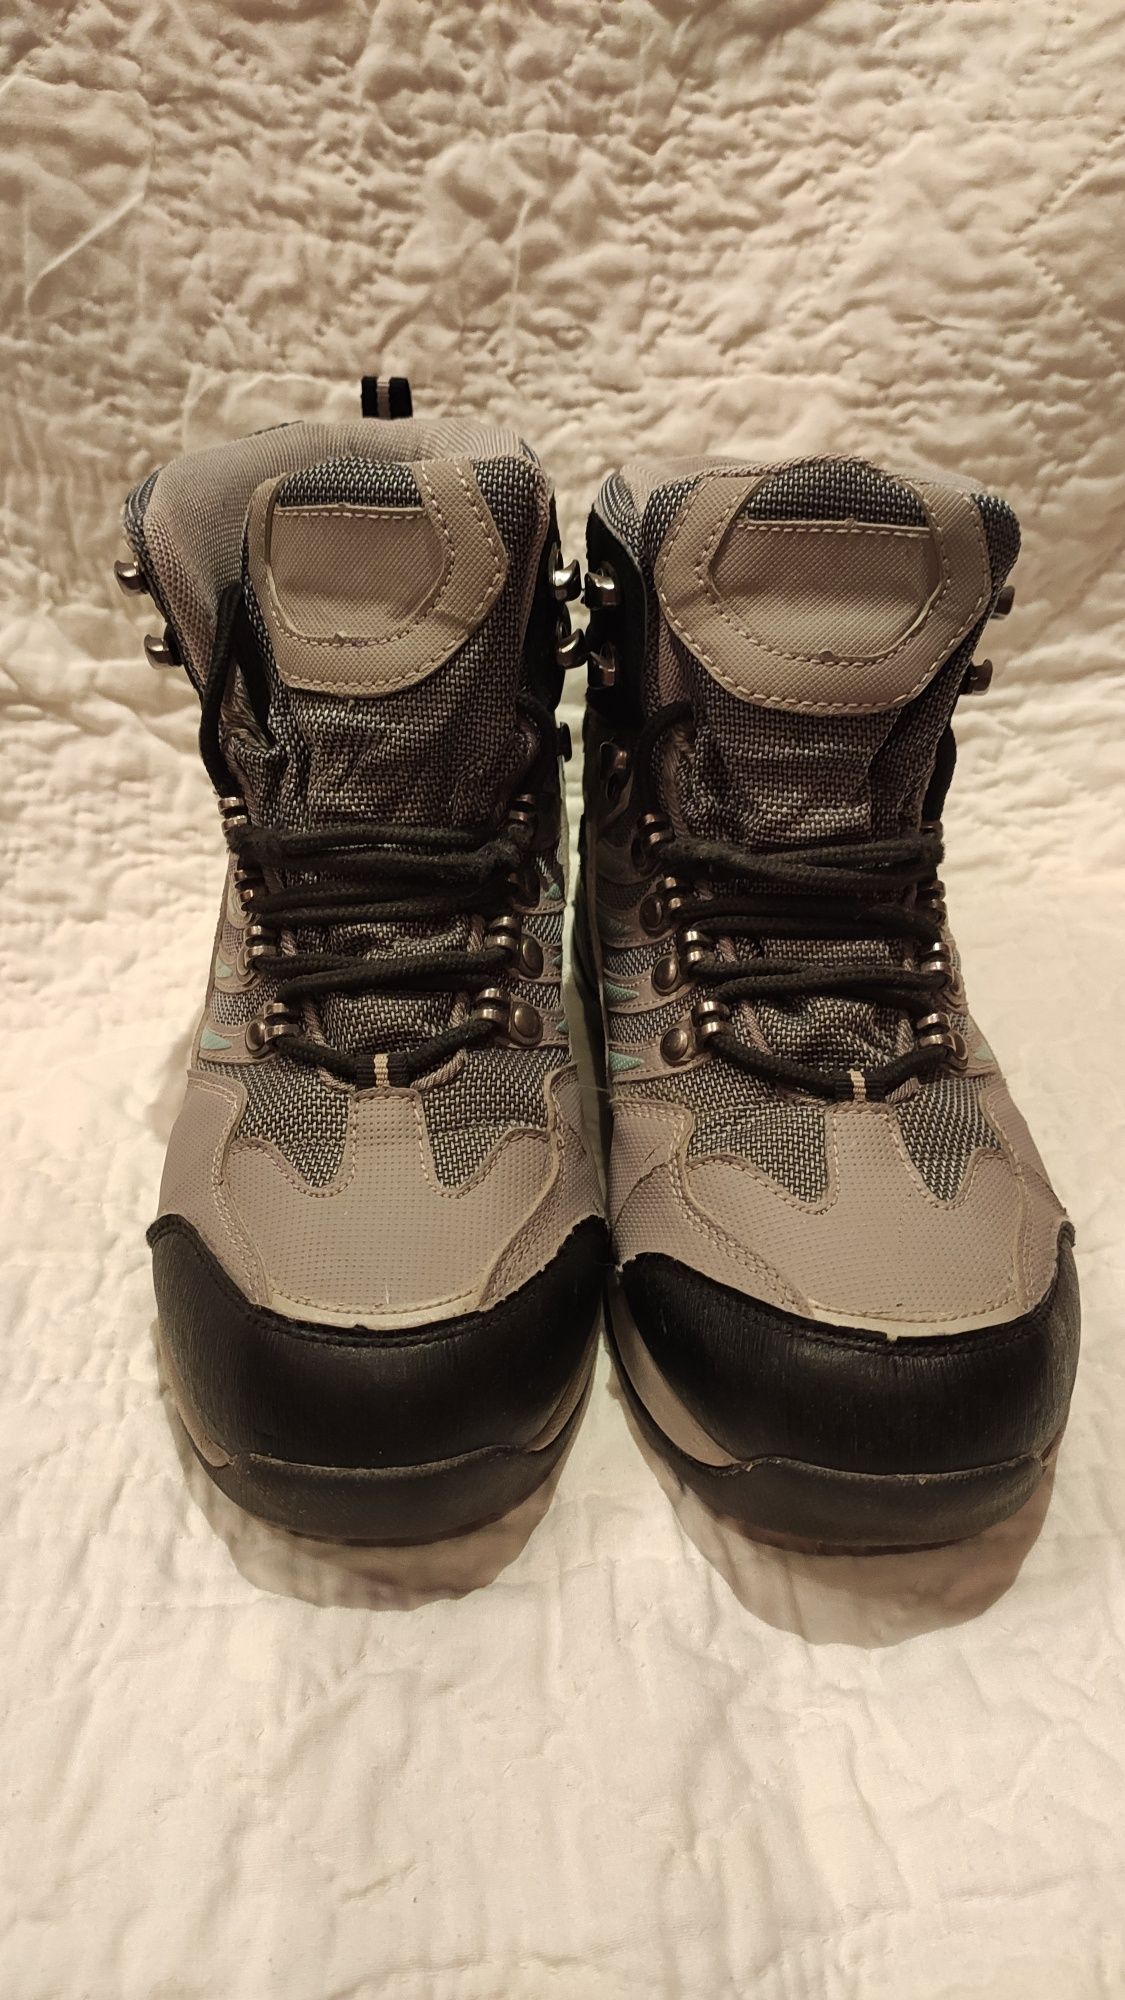 Зимние подростковые ботинки Waterproof. Размер 39 (стелька 260 мм).